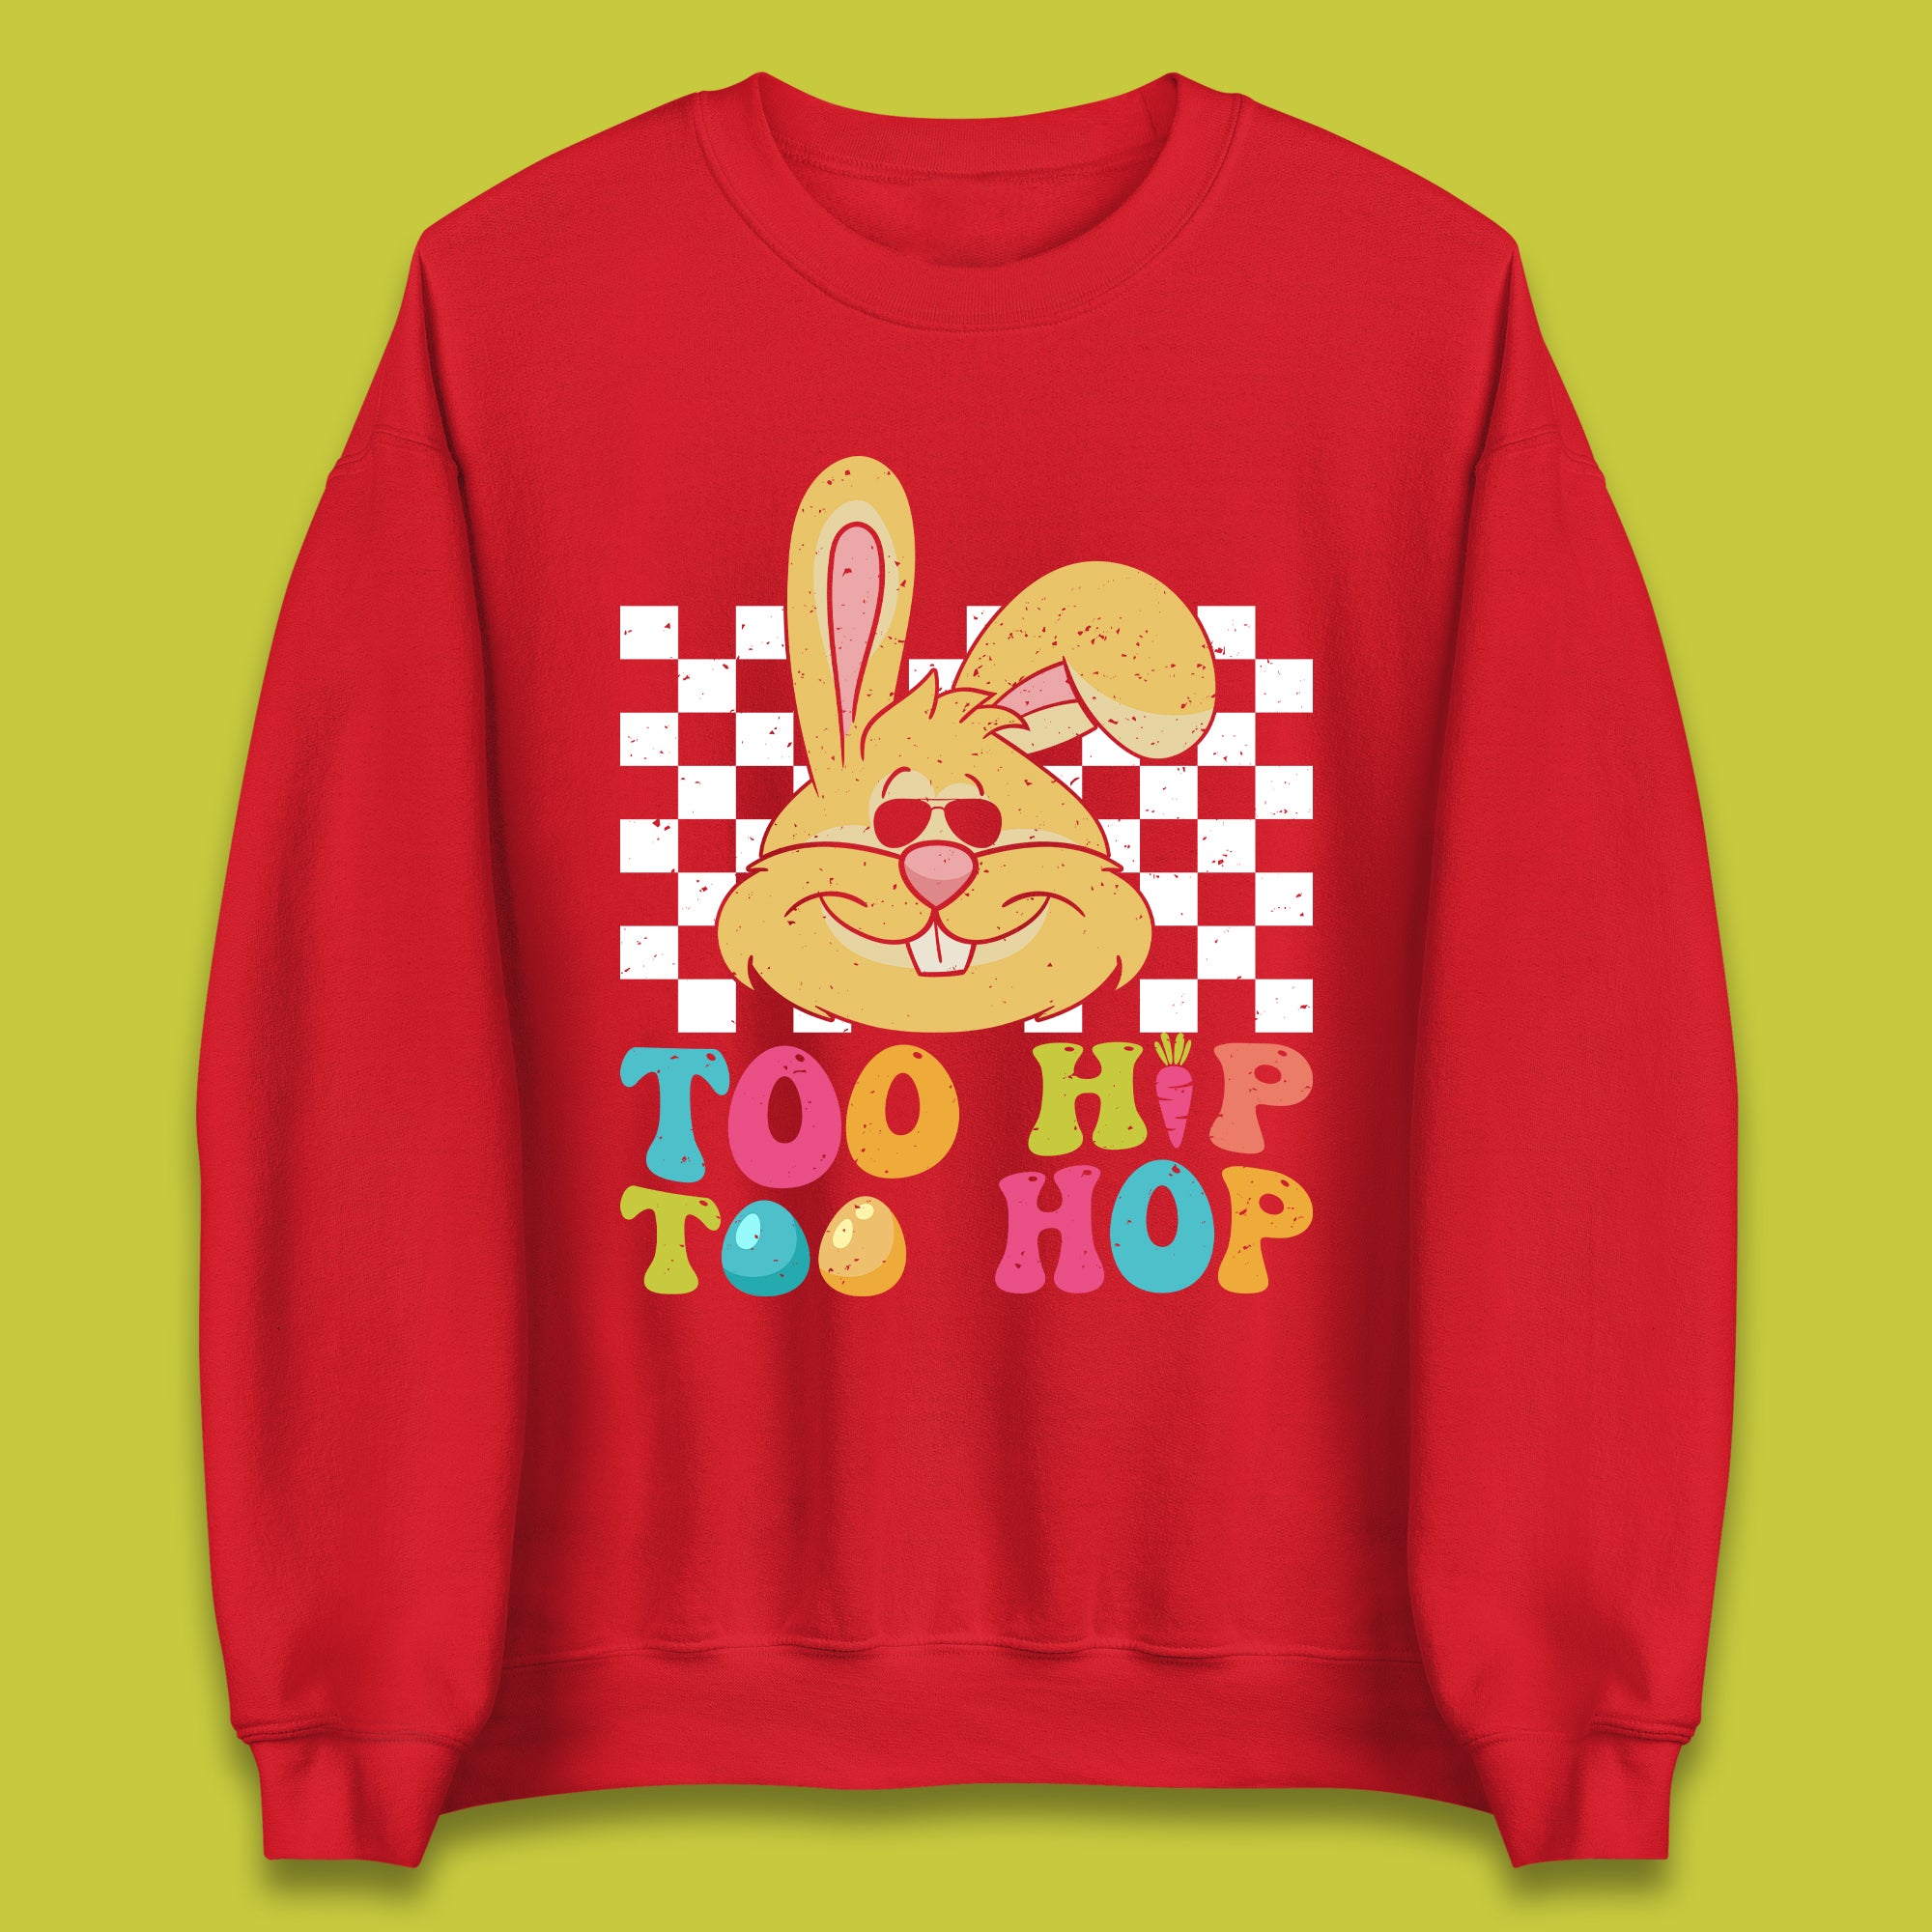 Too Hip To Hop Unisex Sweatshirt